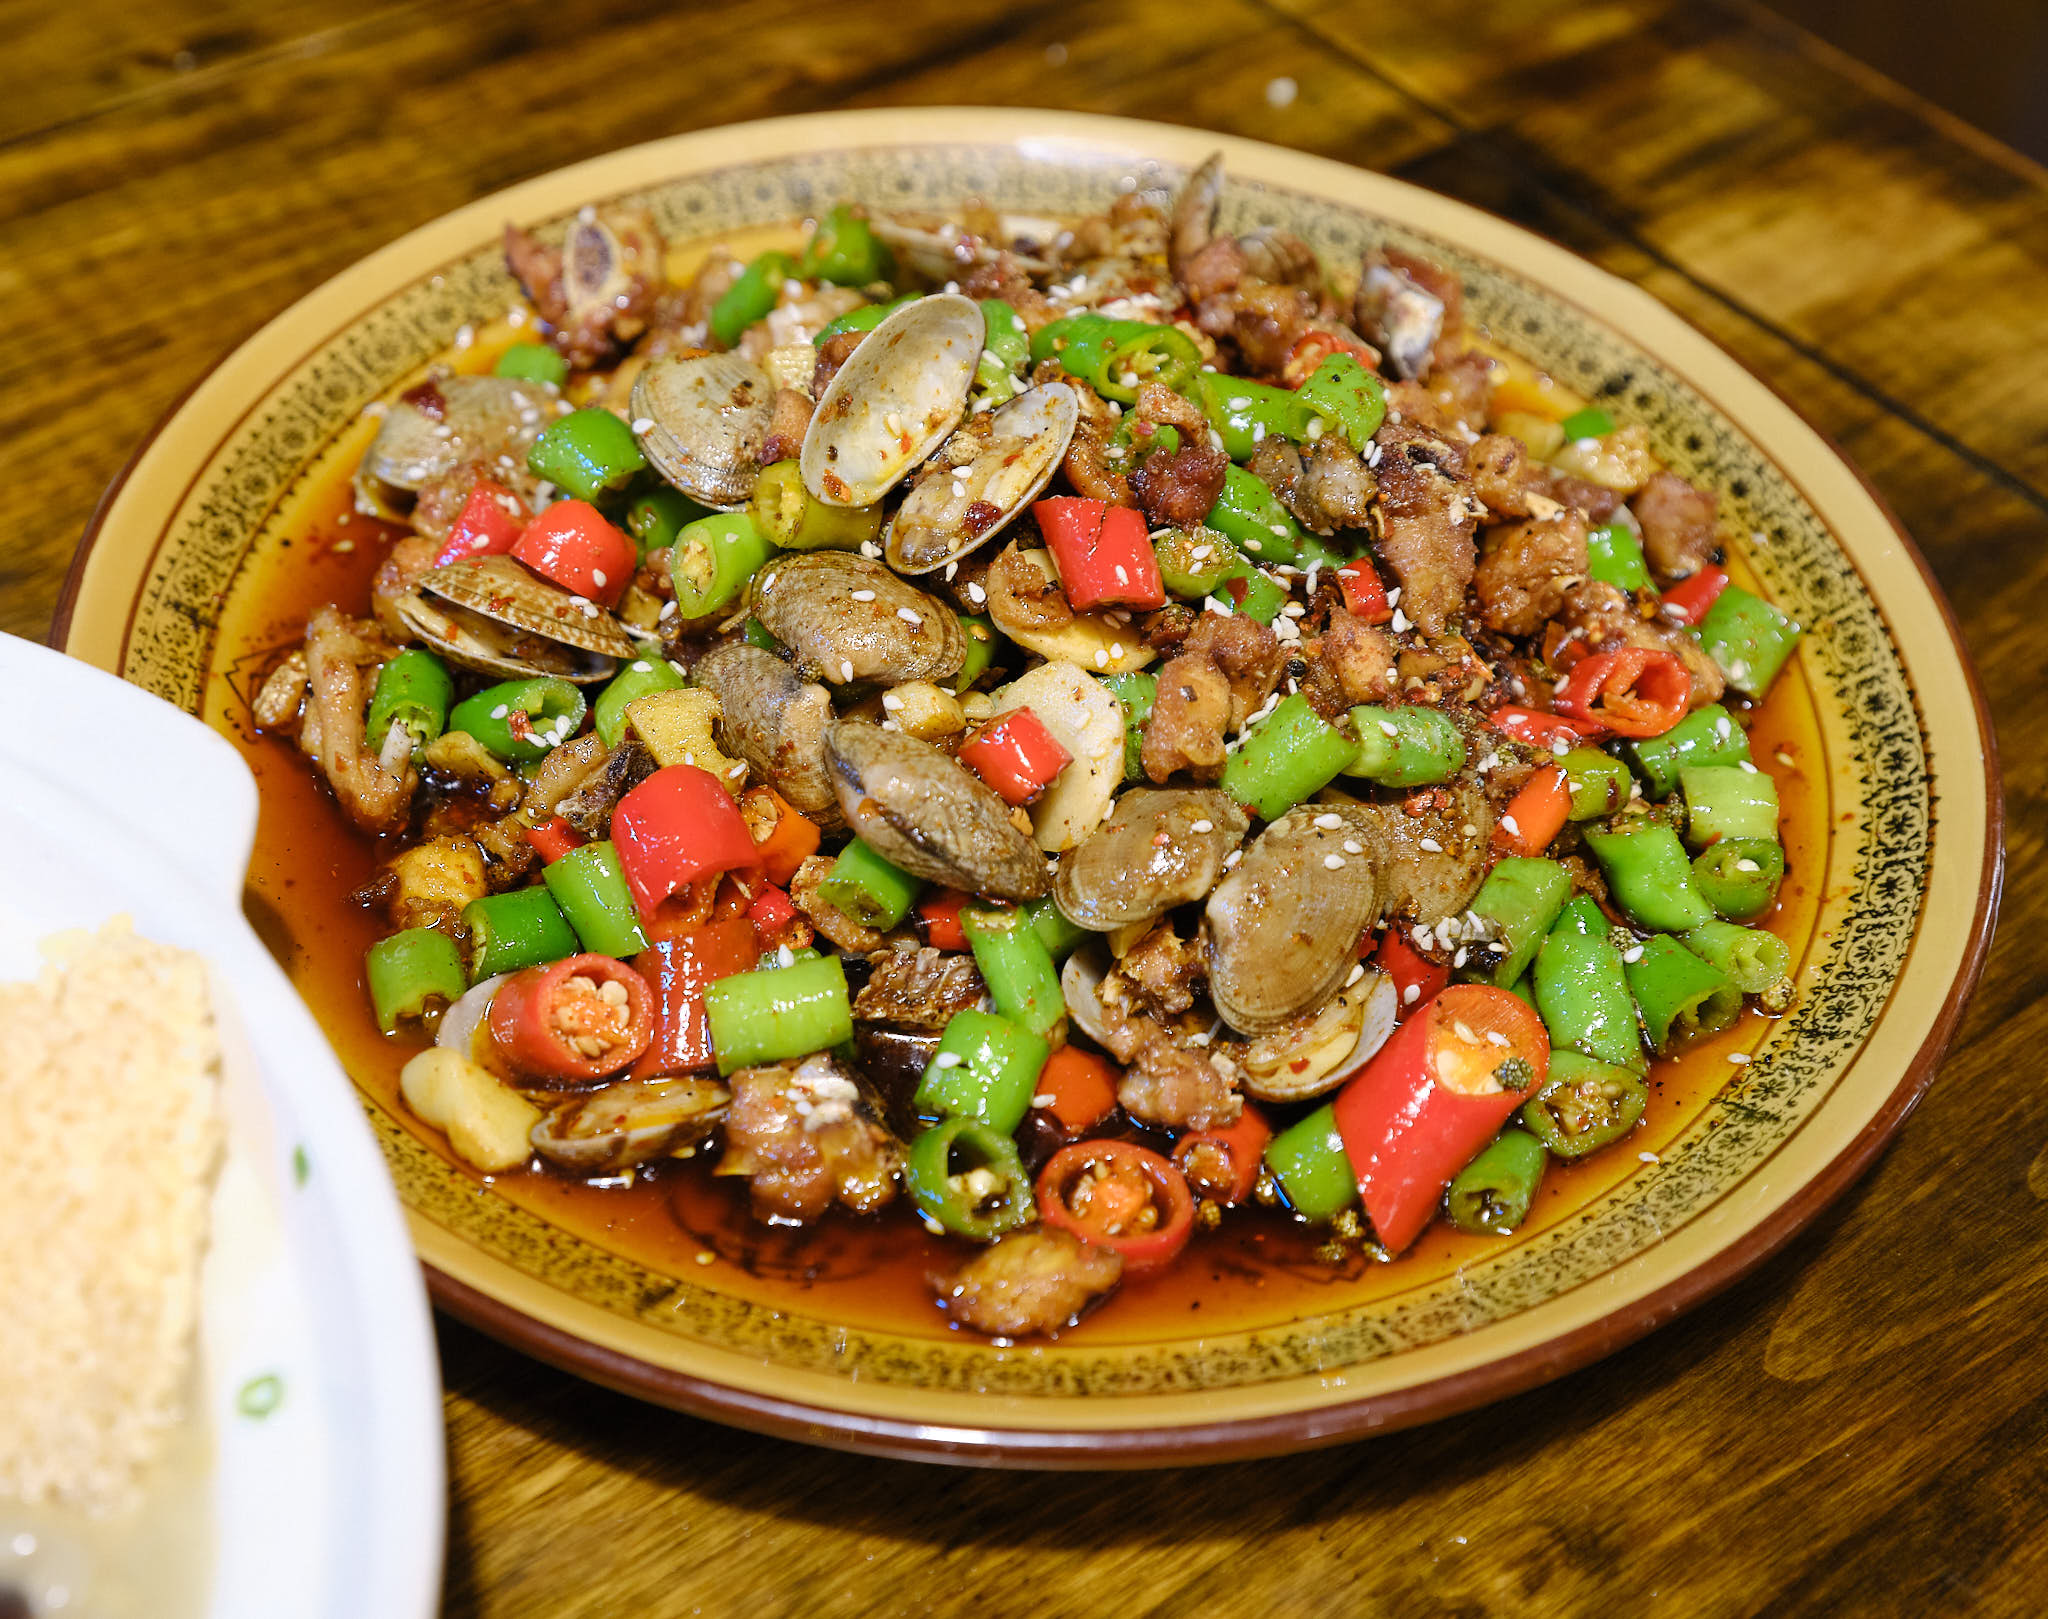 Spicy Chengdu style chicken dish